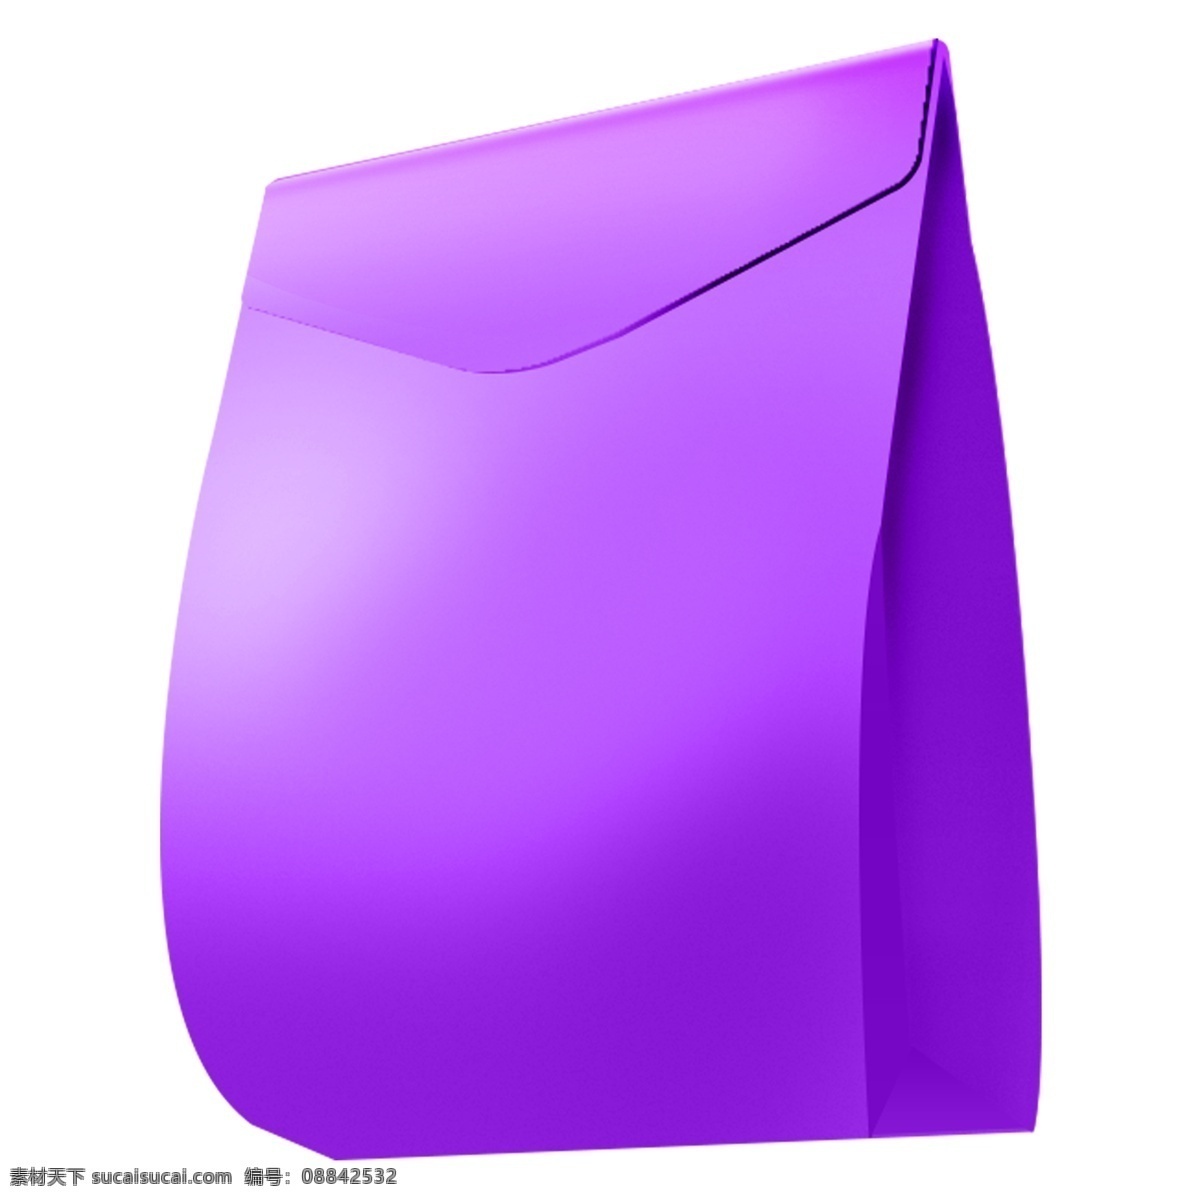 紫色 袋子 装饰 商务 简约 装饰素材